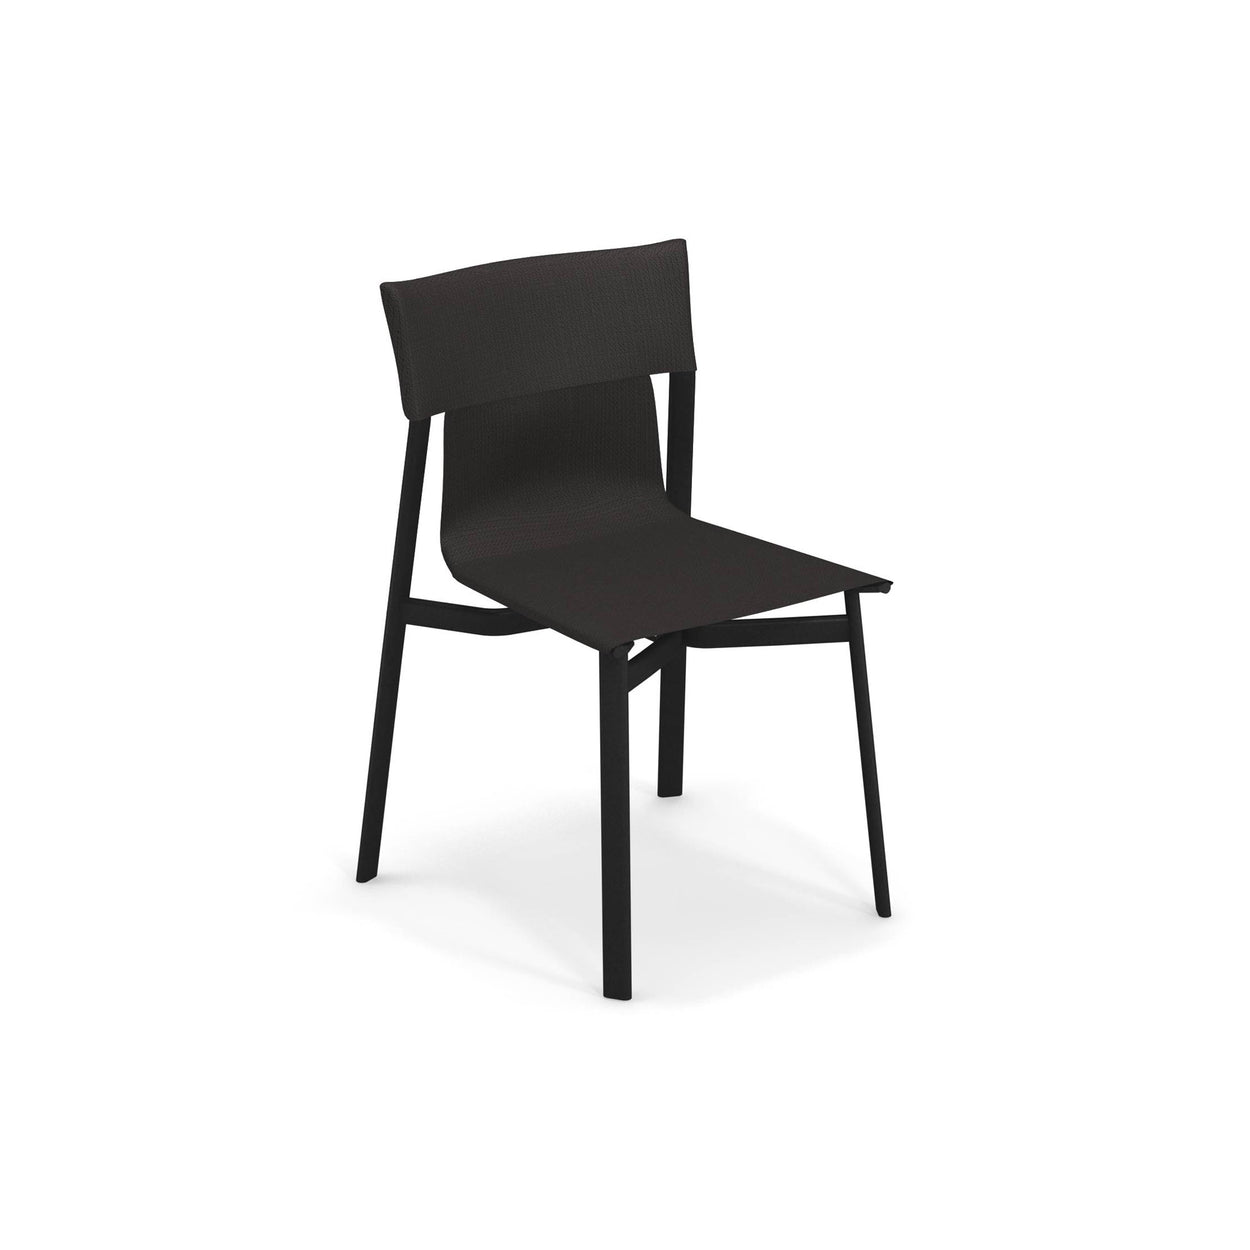 Breeze chair / 2 stuks